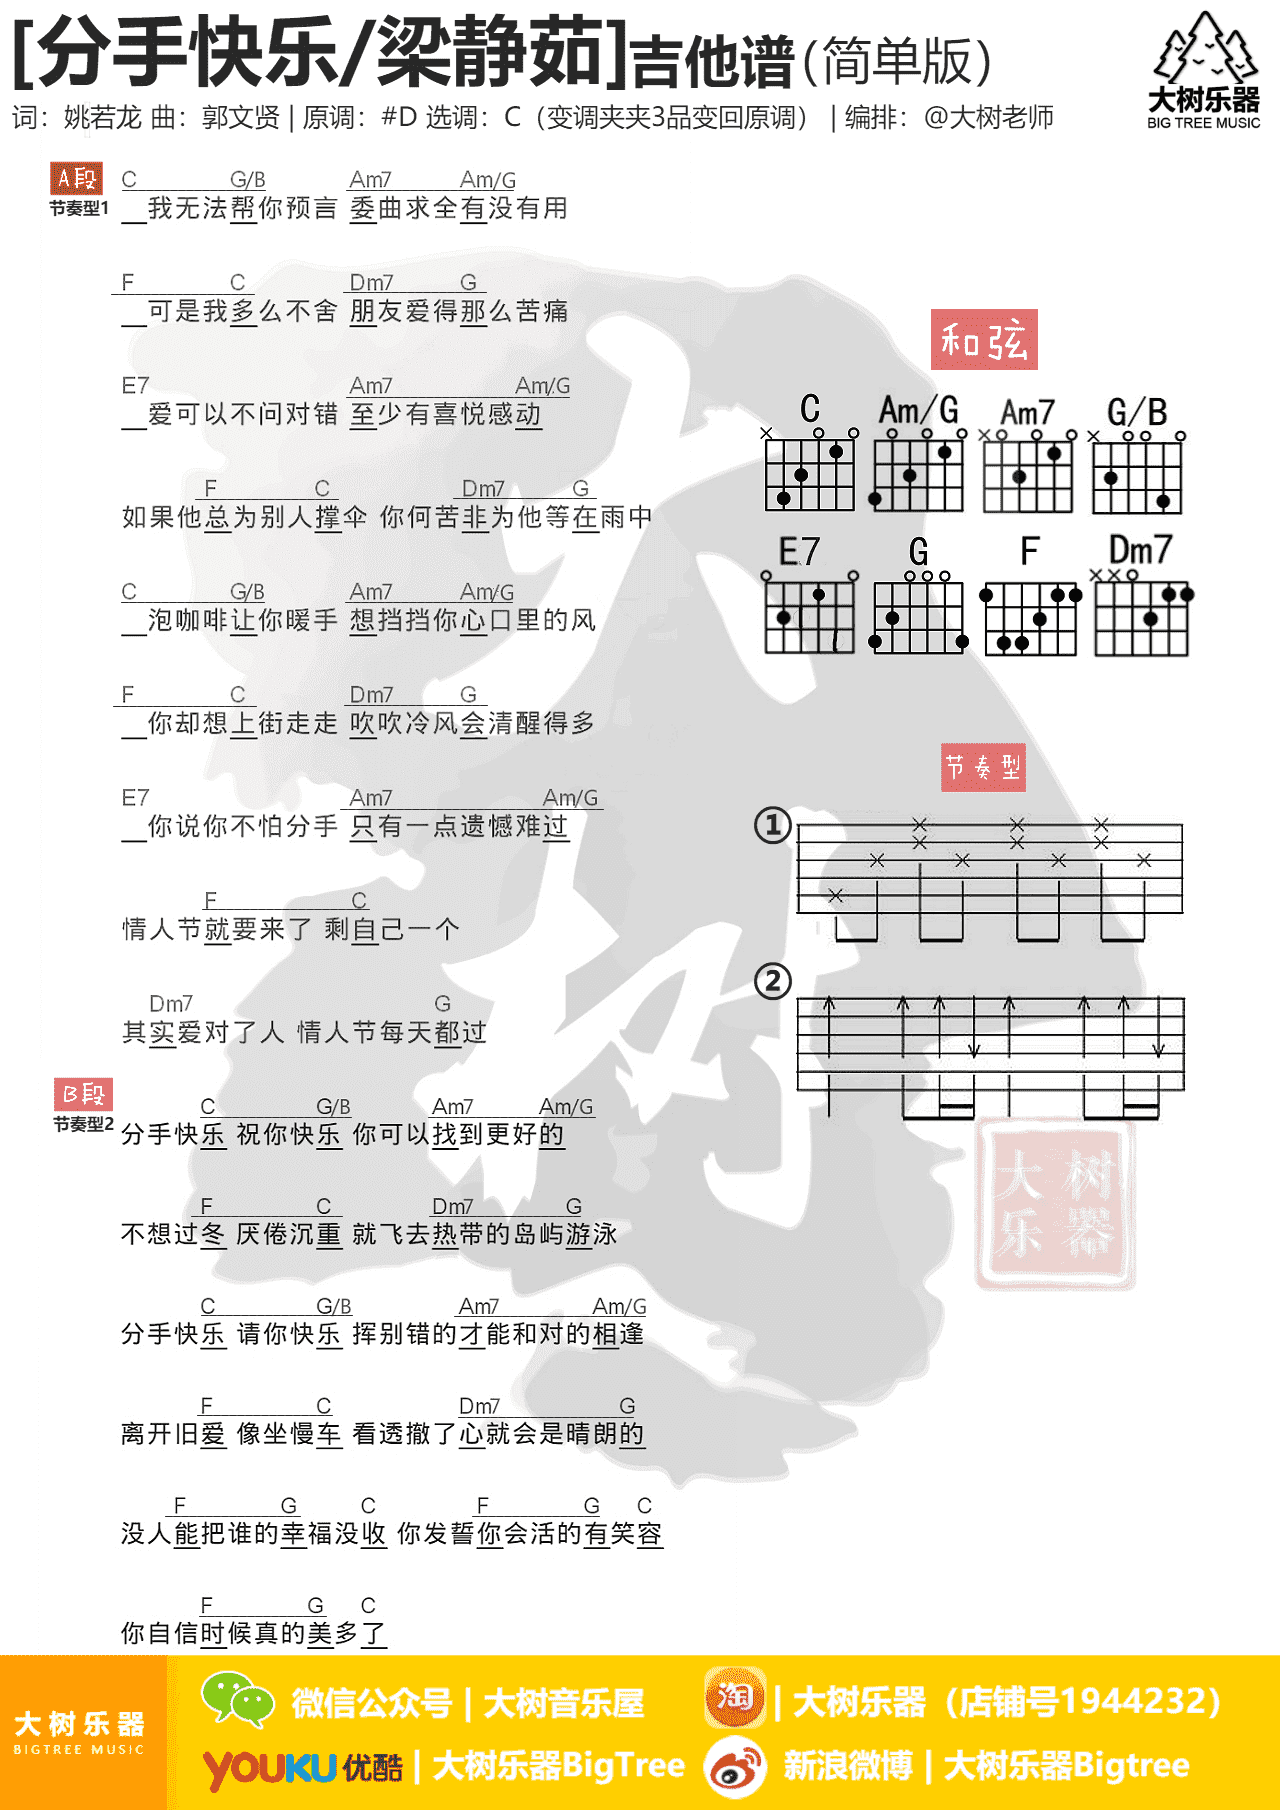 听见下雨的声音(大树乐器-大树音乐)吉他谱(图片谱,弹唱,教学)_周杰伦(Jay Chou)